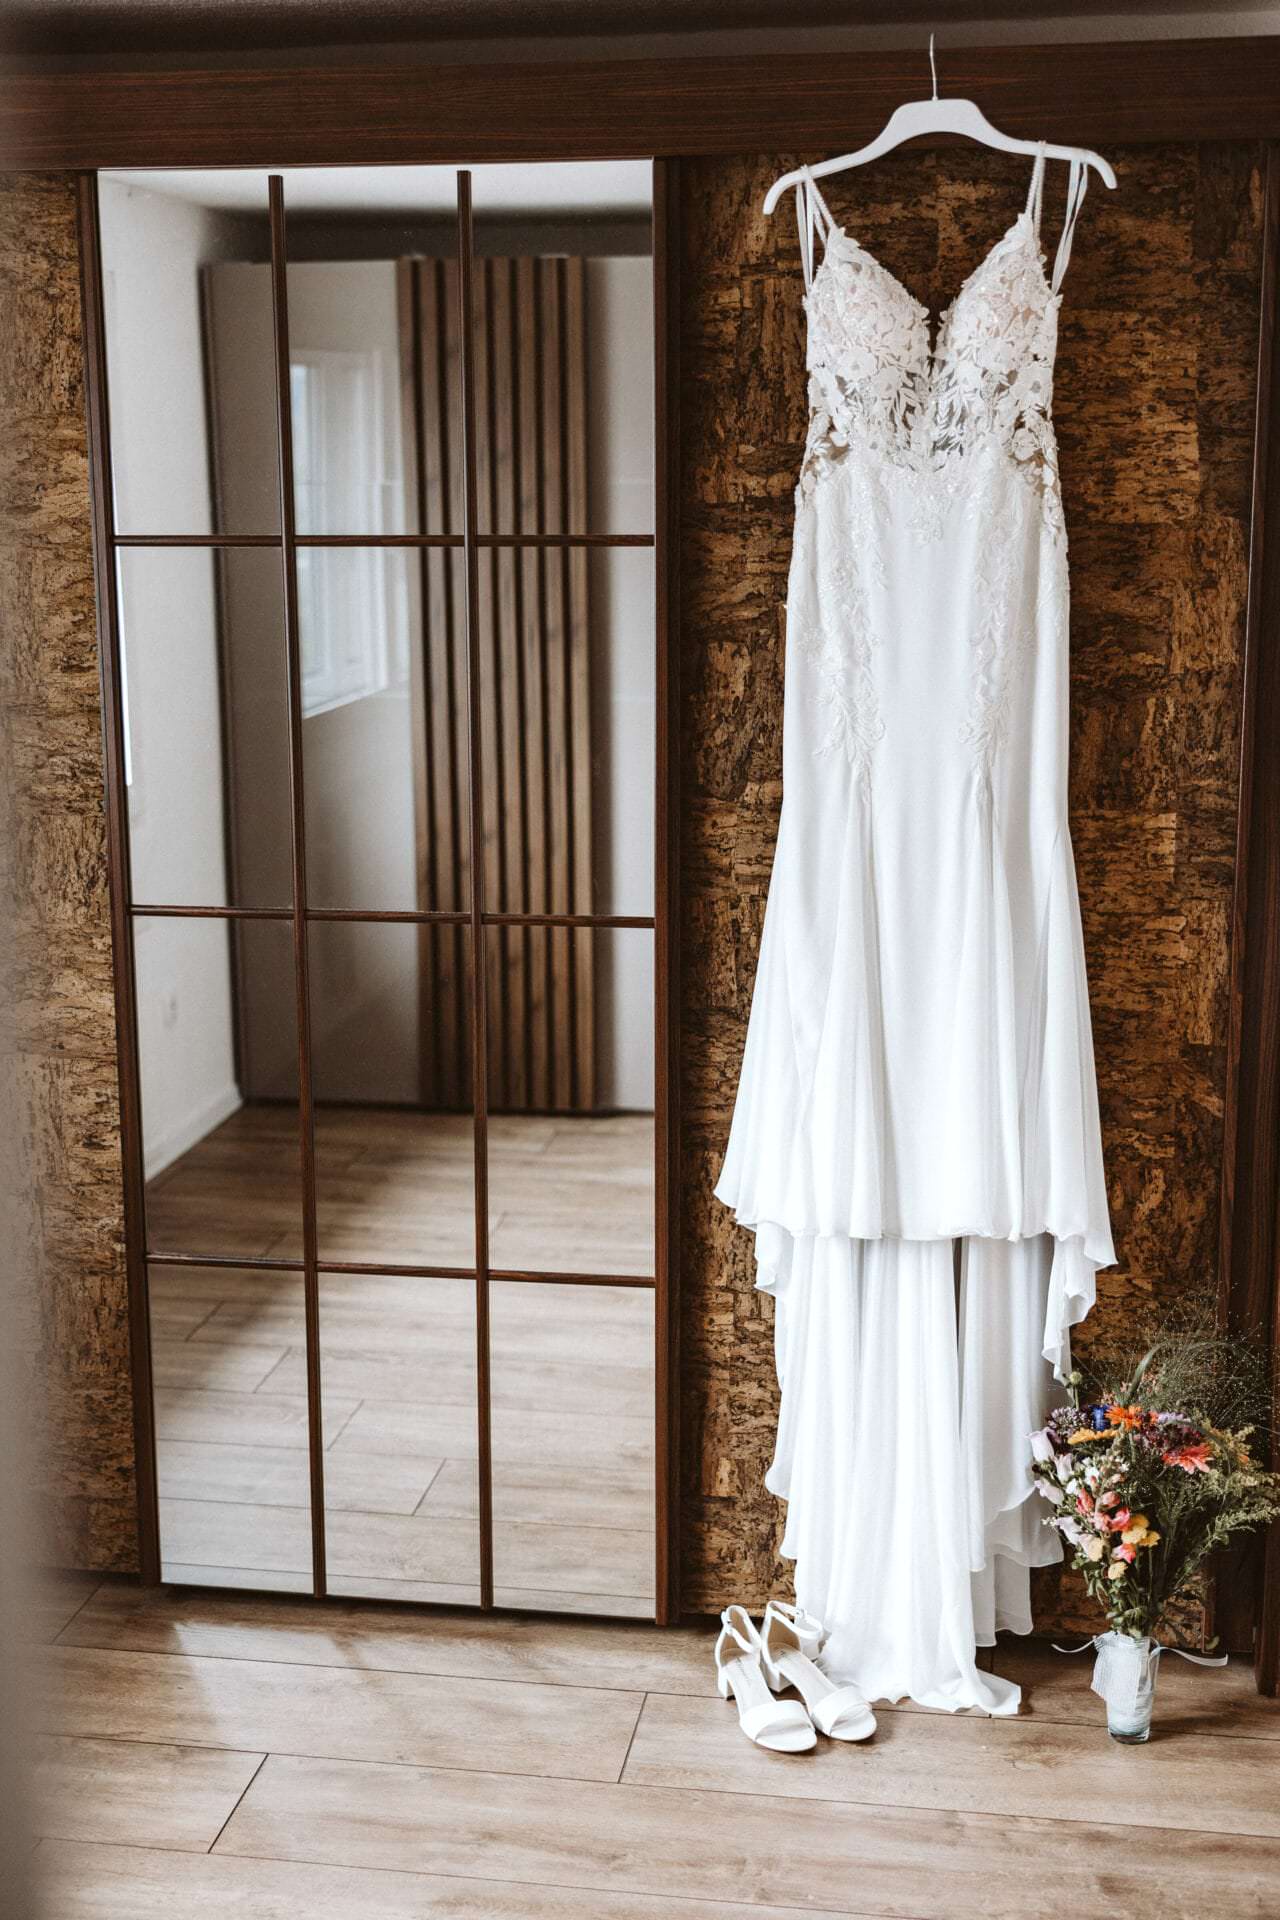 Hochzeitsfotograf Marl Hochzeit Heiraten Hochzeitsfotos - Hochzeitskleid hängt auf einem weißen Kleiderbügel neben einem Spiegel. Unter dem Hochzeitskleid ist ein Blumenstrauß und Schuhe zu sehen